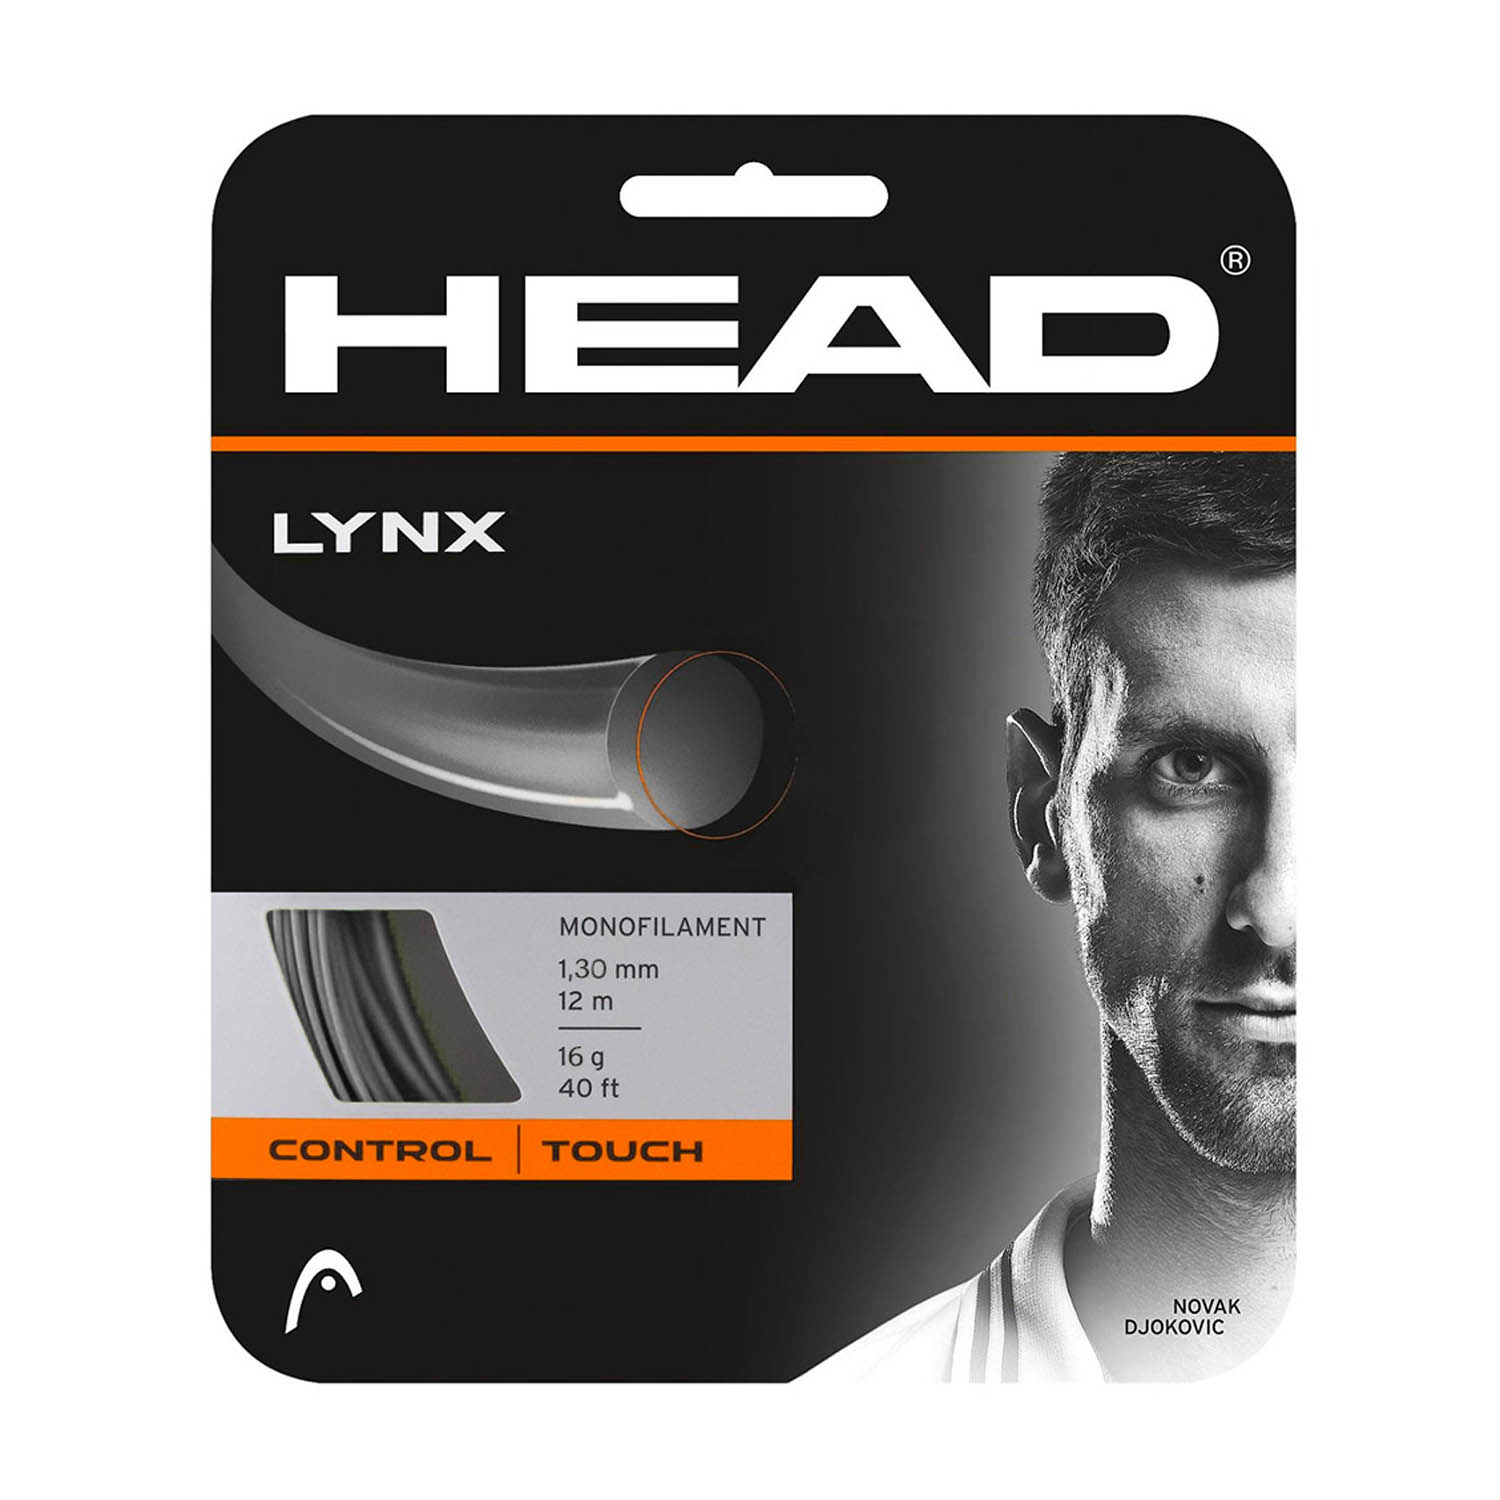 Head Lynx 1.30 12 m Set - Grey